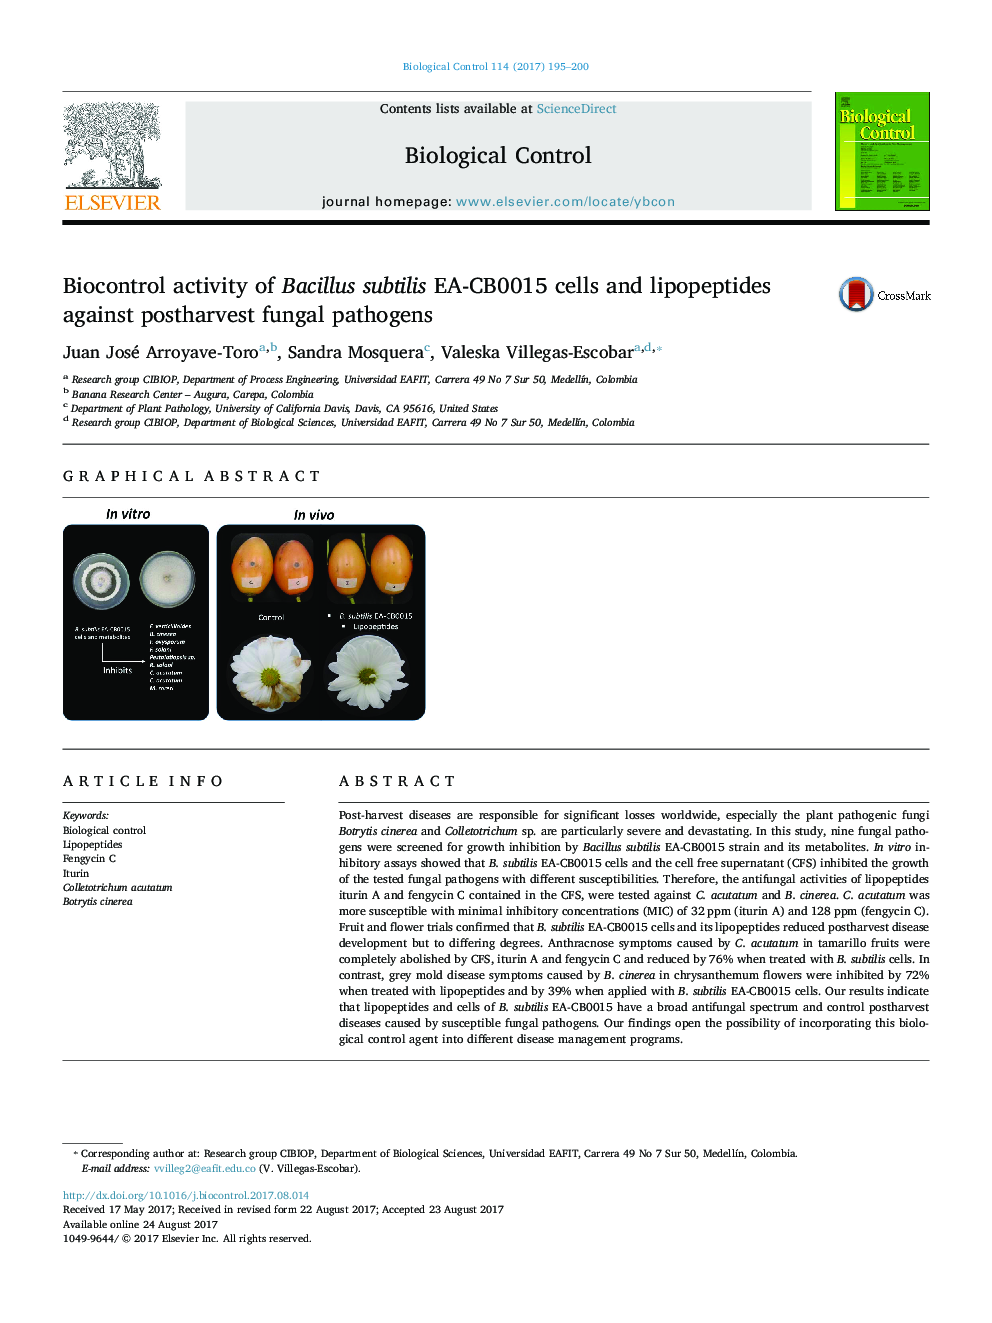 فعالیت Biocontrol از سلول های Bacillus subtilis EA-CB0015 و لیپوپپتیدها در برابر عفونت های قارچی پس از زایمان